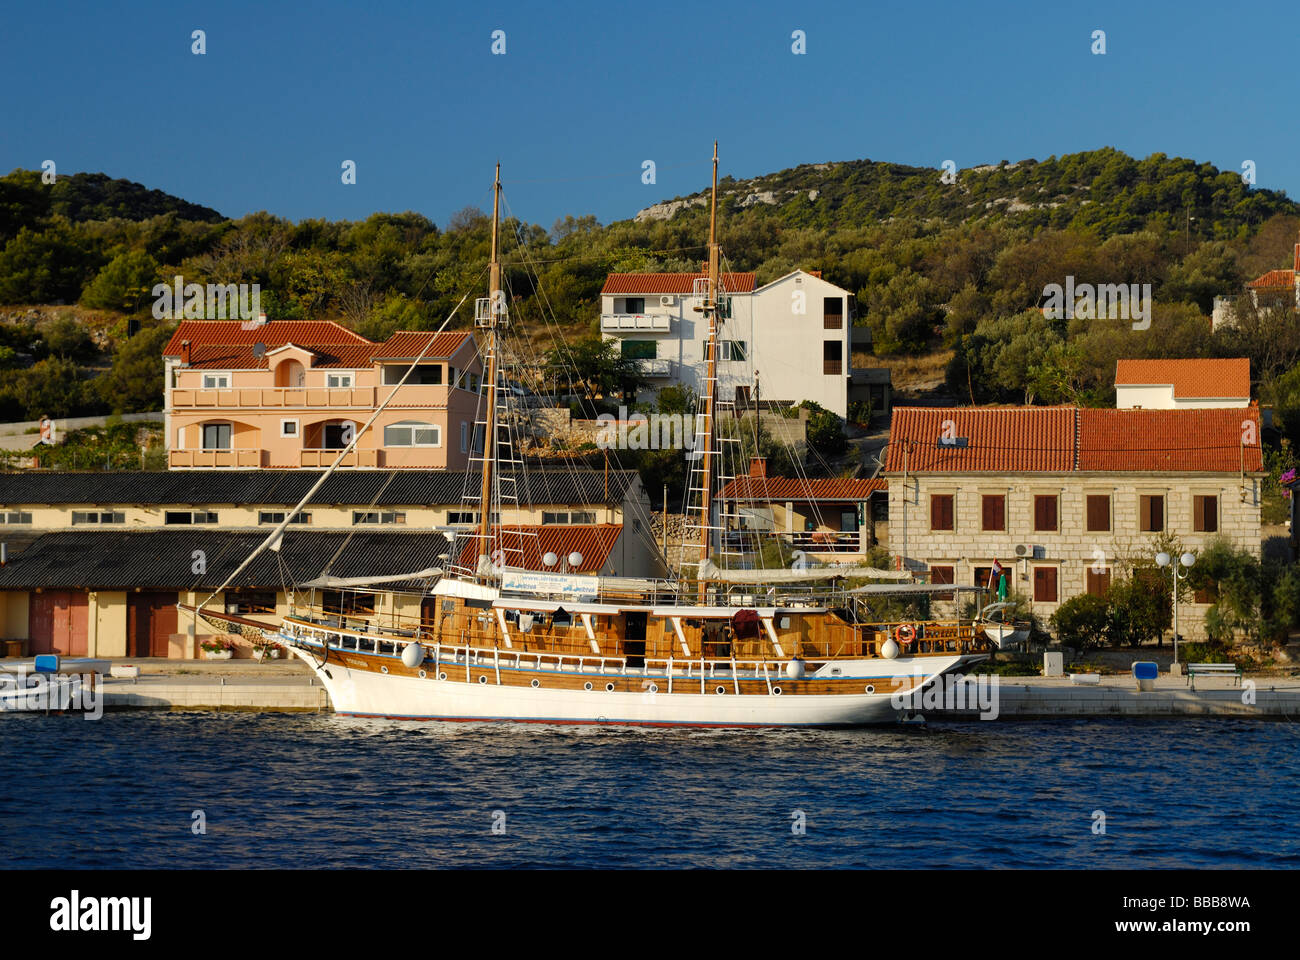 Charter imbarcazione sul lungomare a Sali su Dugi Otok, Datmatian costa della Croazia Foto Stock